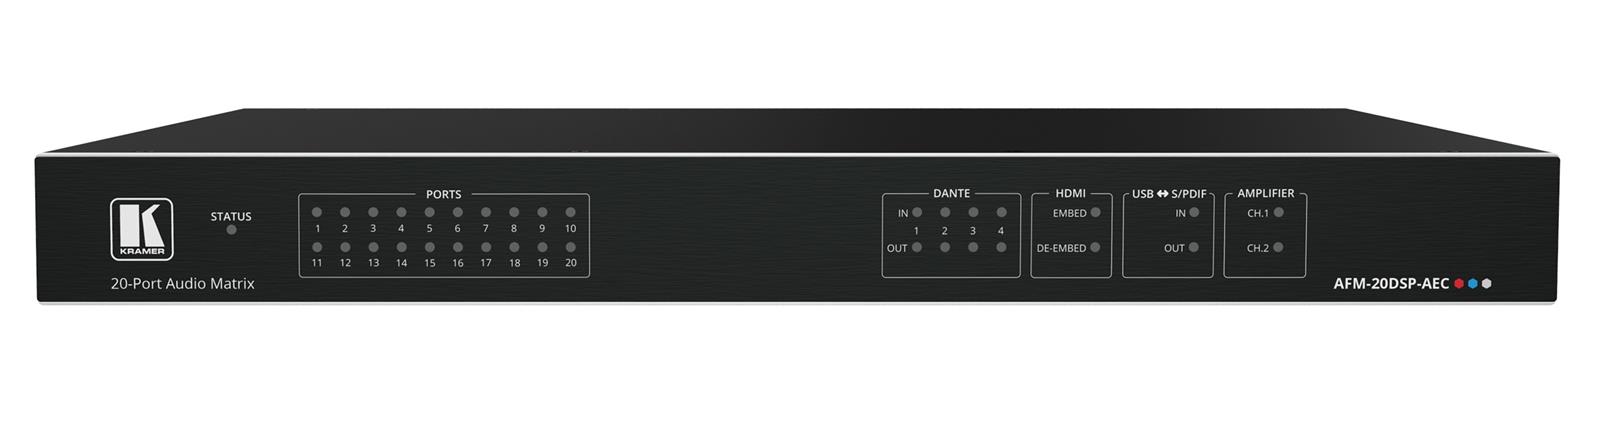 Kramer AFM-20DSP-AEC - 20Port Audio Matrix with DSP, AEC and Interchangeable Inputs & Outputs